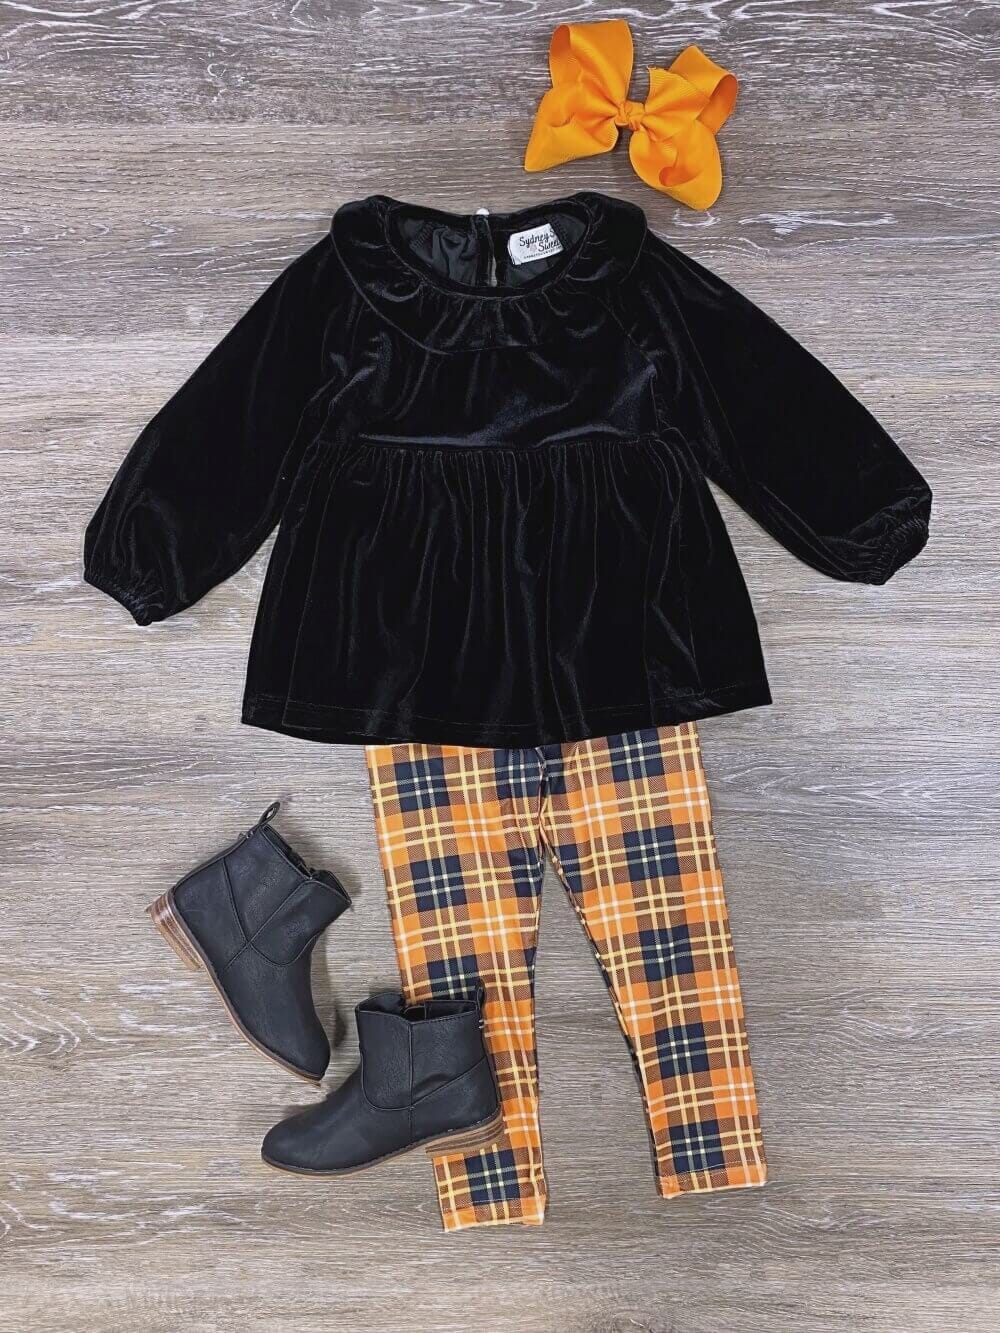 Orange & Black Velvet Top Plaid Leggings Outfit - Sydney So Sweet